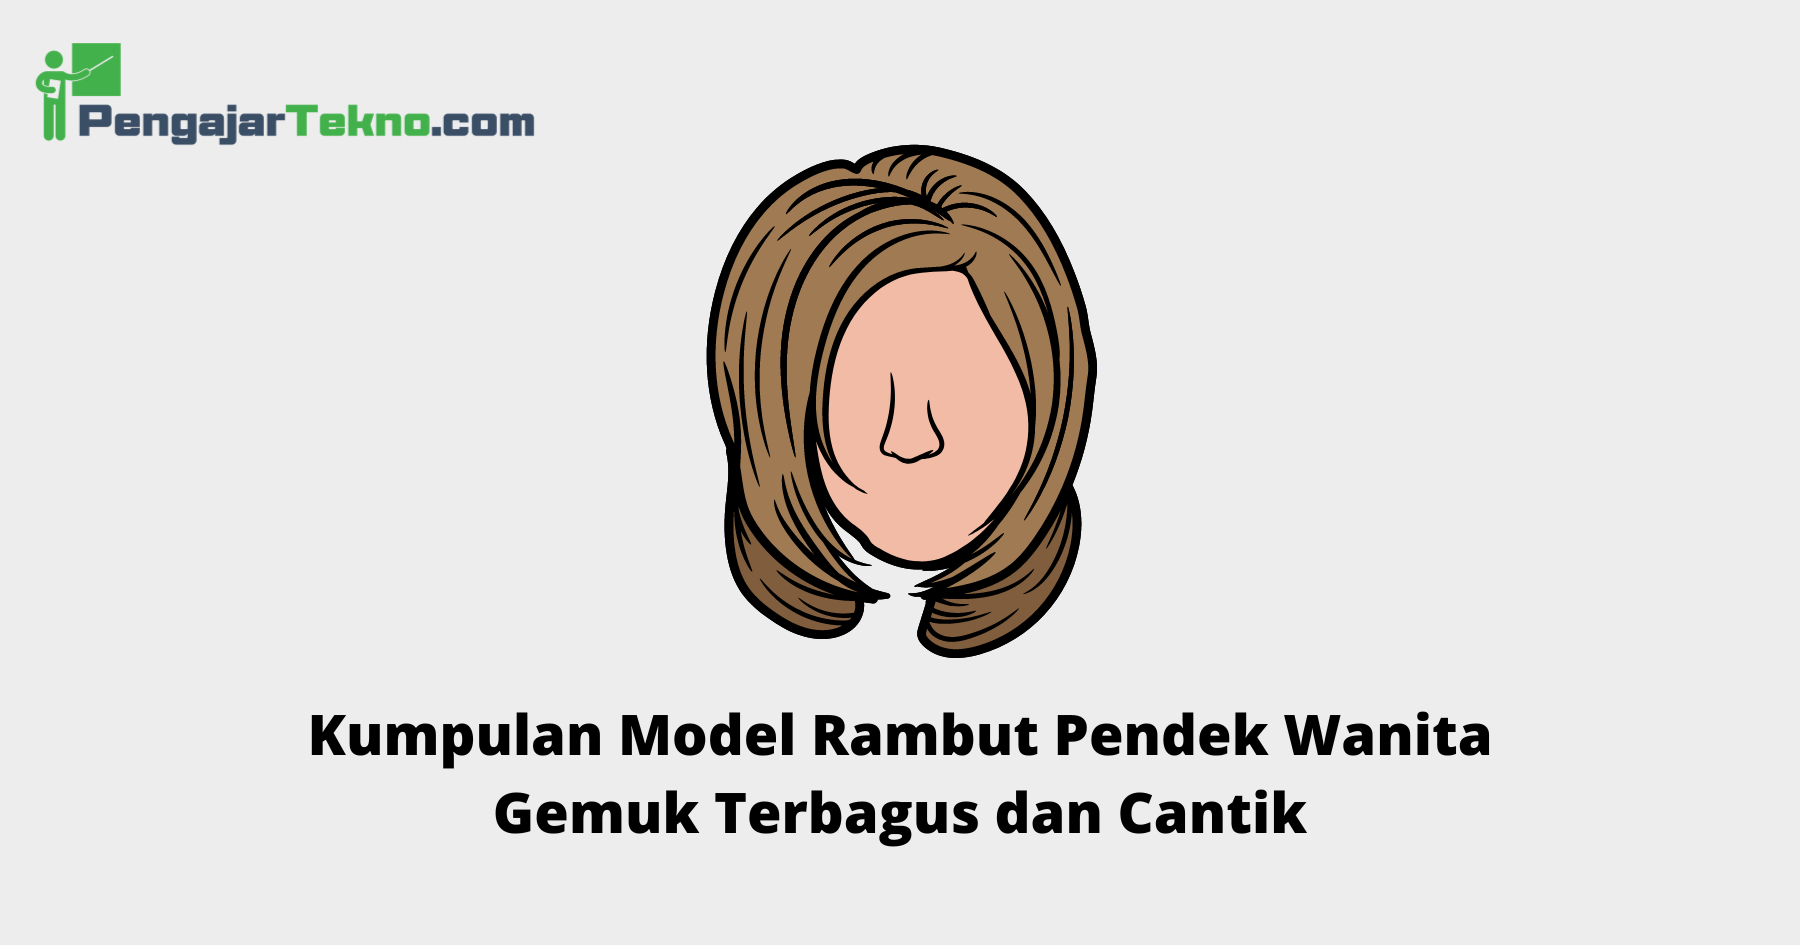 Model Rambut Pendek Wanita Gemuk